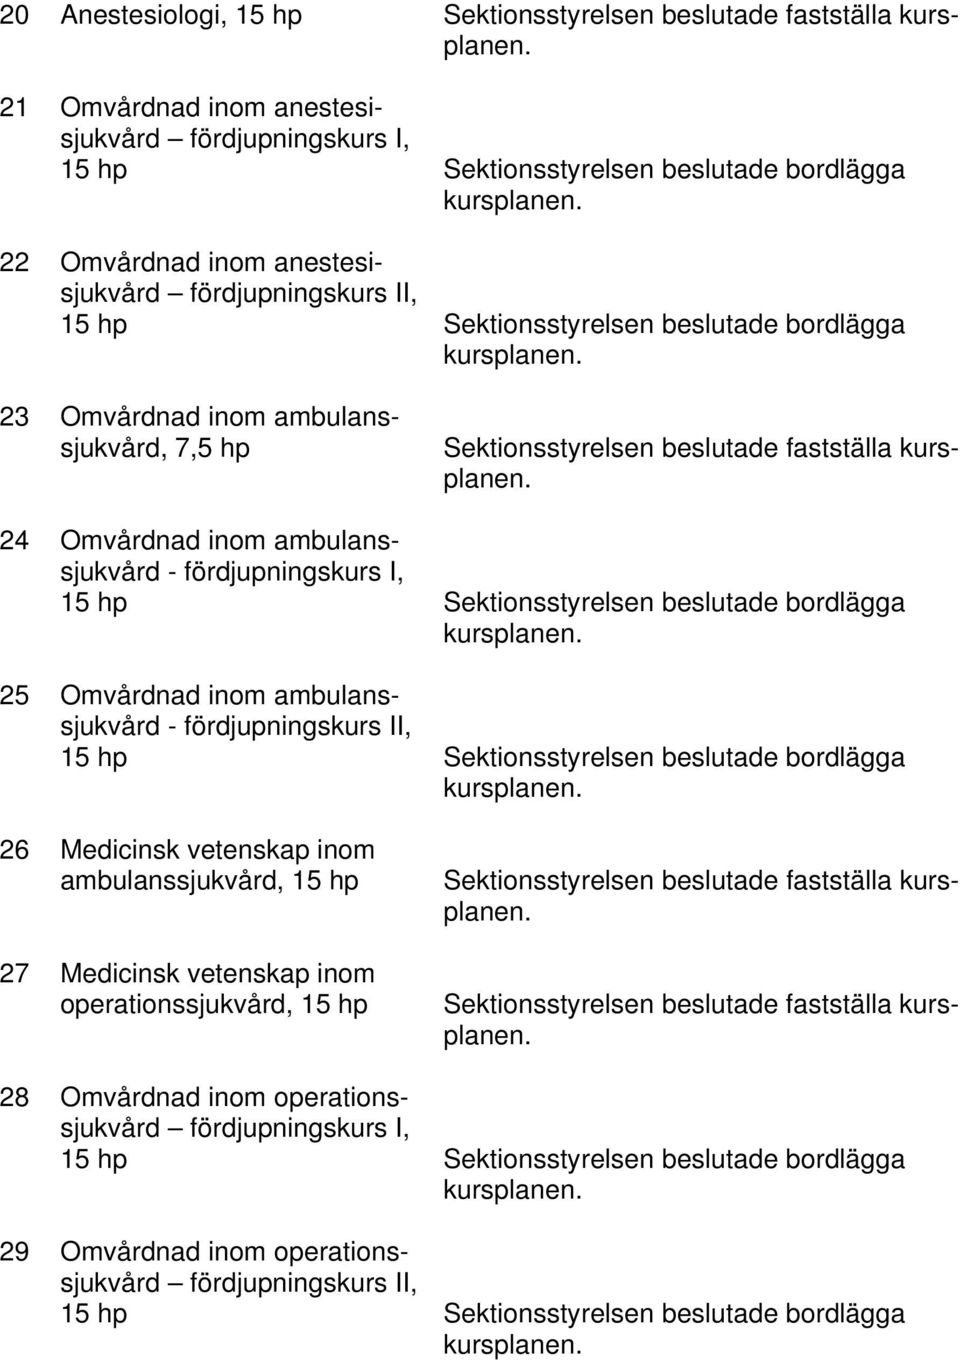 Omvårdnad inom ambulanssjukvård - fördjupningskurs II, 26 Medicinsk vetenskap inom ambulanssjukvård, 15 hp 27 Medicinsk